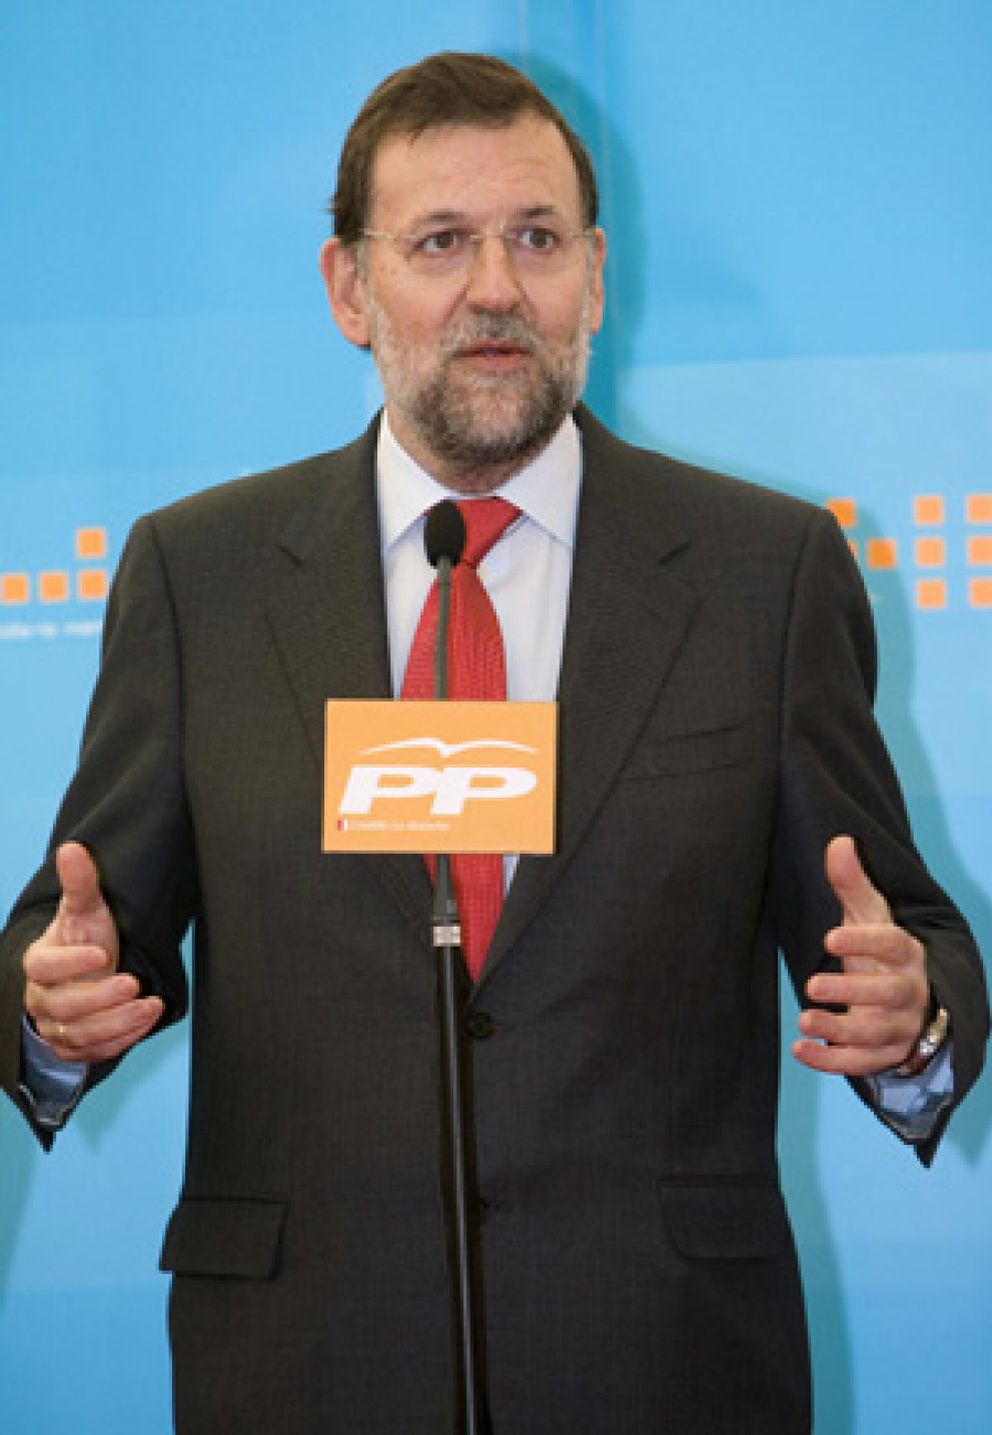 Foto: Rajoy no prevé cambios en la ley de divorcio y dice que será la "oportunidad" que determine si deroga el matrimonio gay